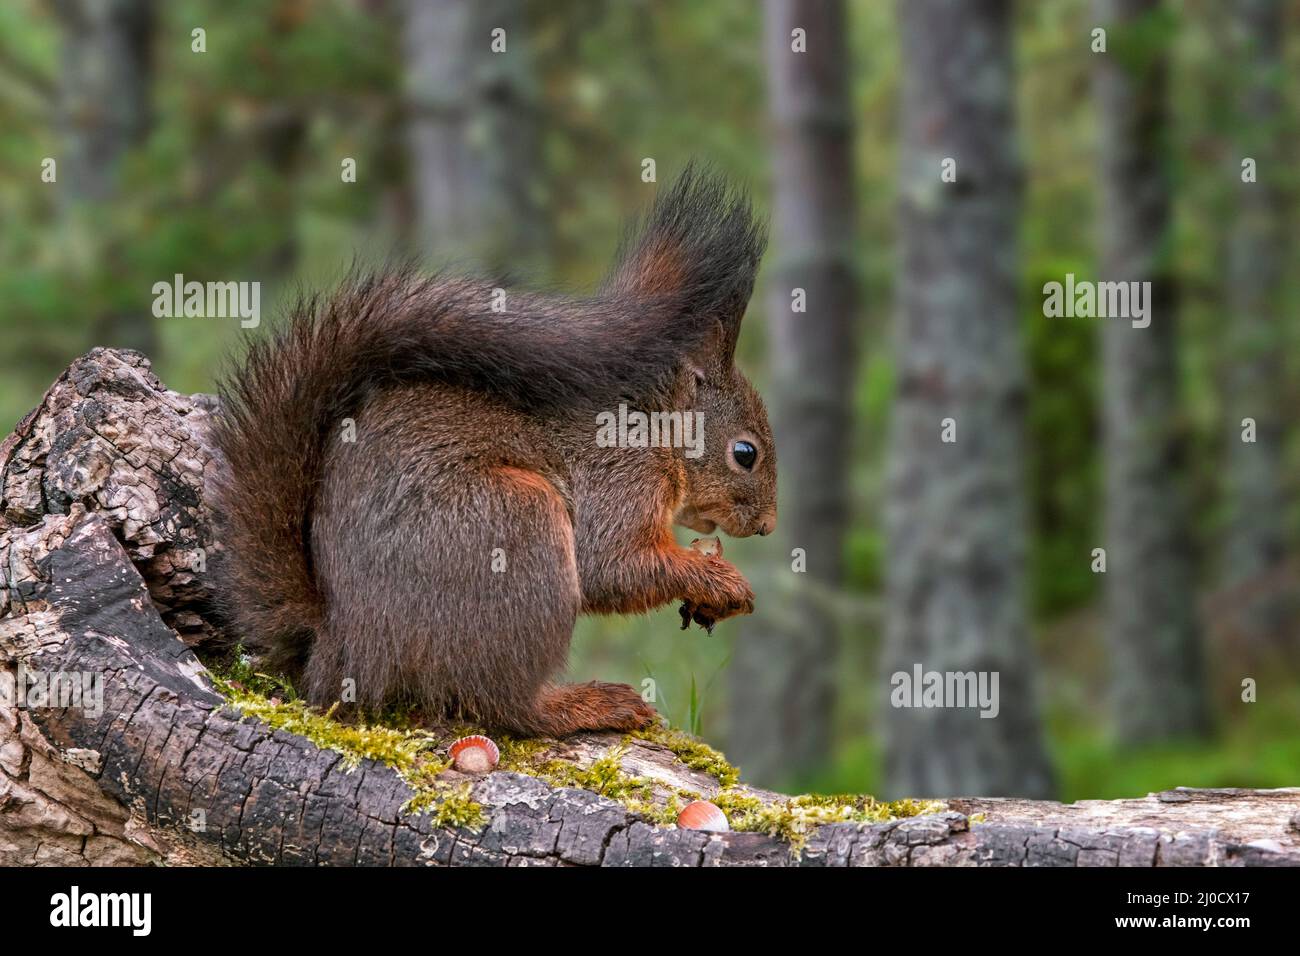 Mignonne d'écureuil rouge eurasien (Sciurus vulgaris) avec de grands touffes d'oreille mangeant noisette / noix de cache alimentaire caché dans la souche d'arbre dans la forêt de pins Banque D'Images